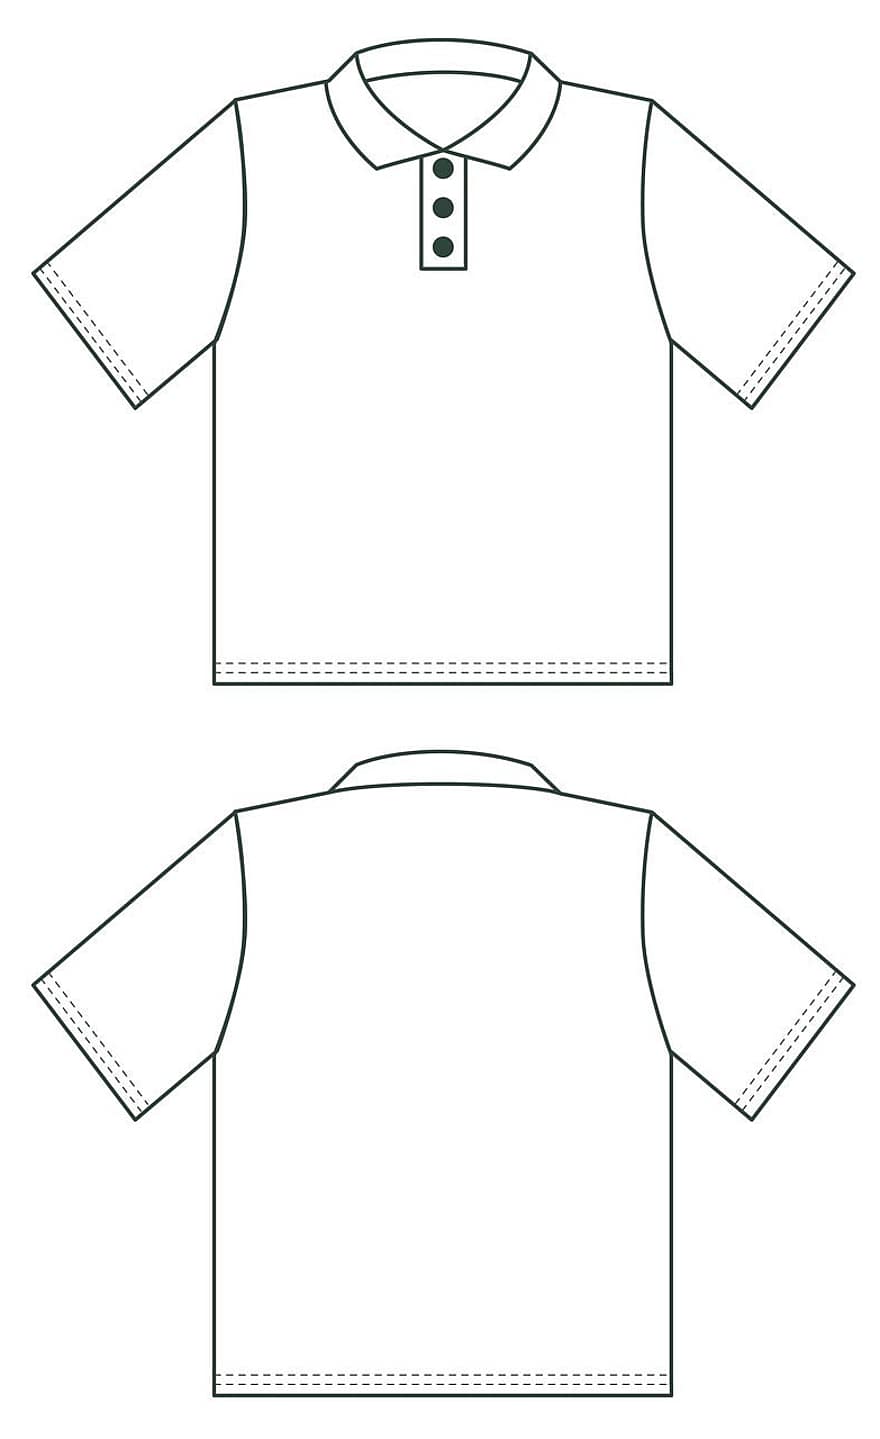 camiseta, imagenes, camisas, polo, imagen, parte superior